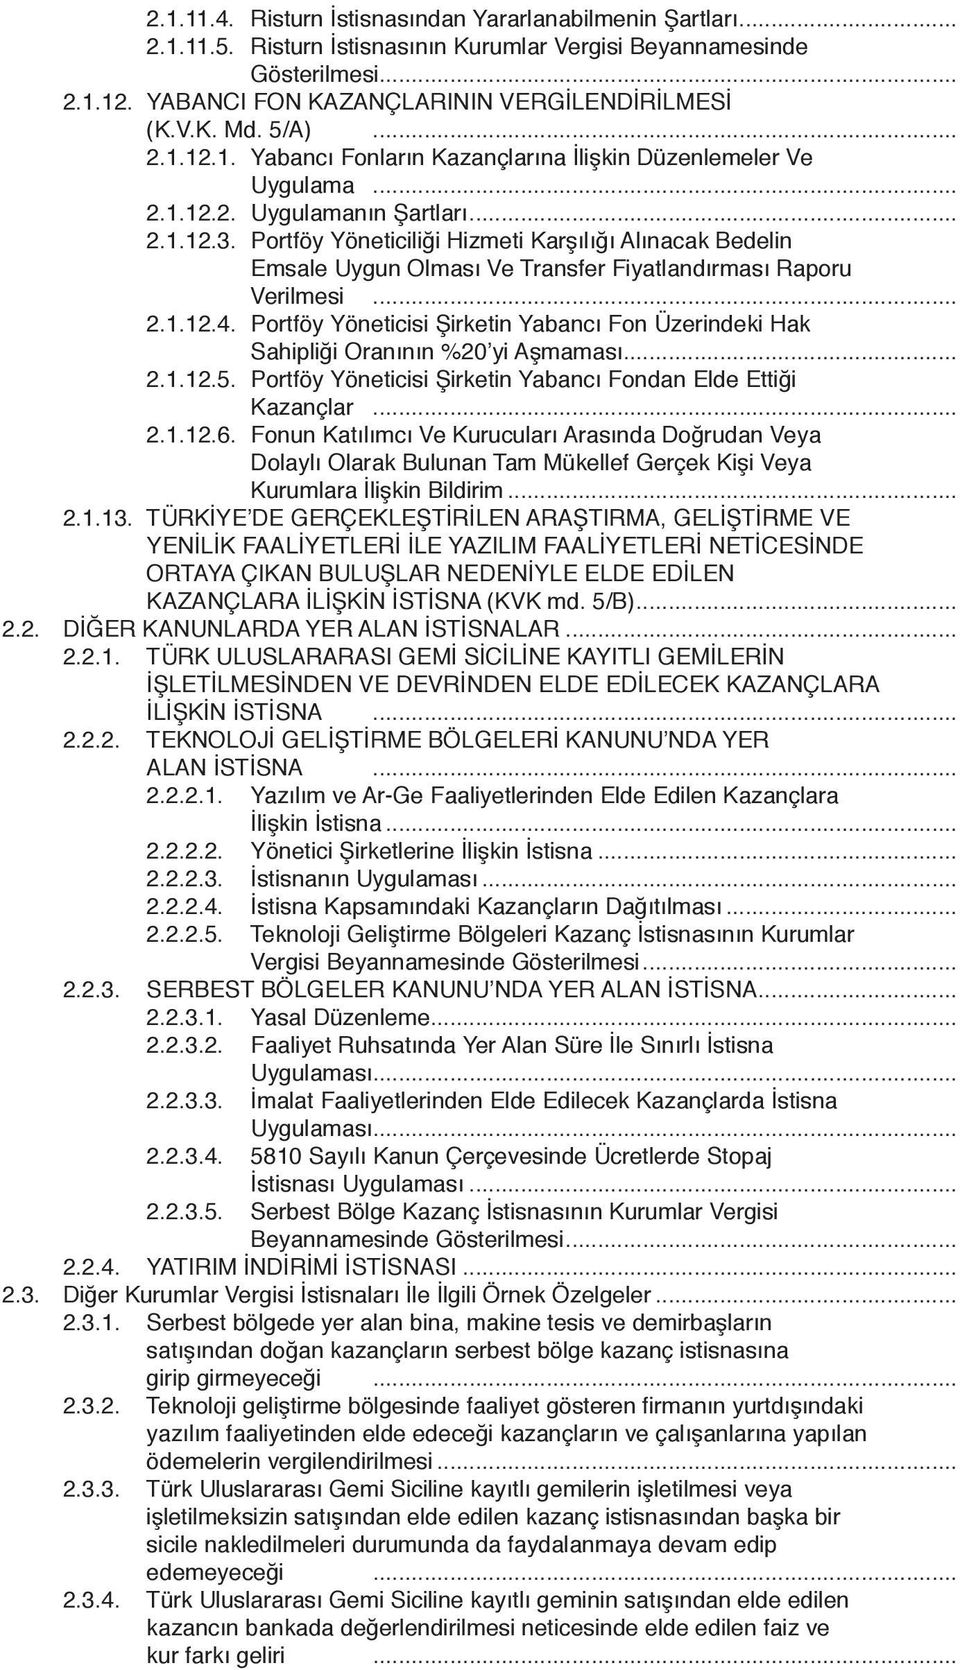 Portföy Yöneticiliği Hizmeti Karşılığı Alınacak Bedelin Emsale Uygun Olması Ve Transfer Fiyatlandırması Raporu Verilmesi... 2.1.12.4.